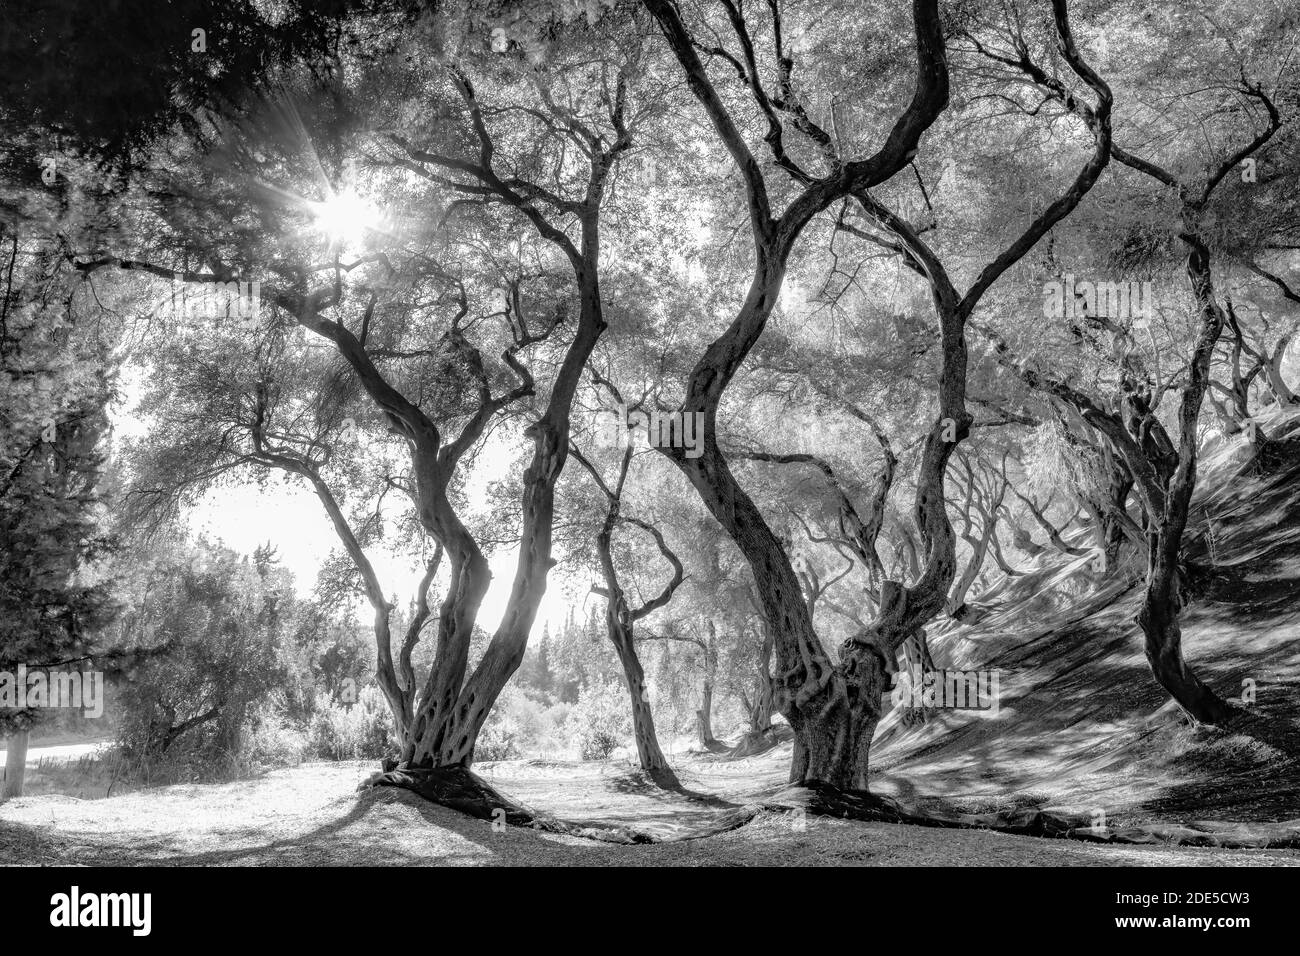 oliveraie, arbres avec troncs tordus, ombres et lumière jouent sous les arbres avec dense large-étendre les couronnes. Banque D'Images